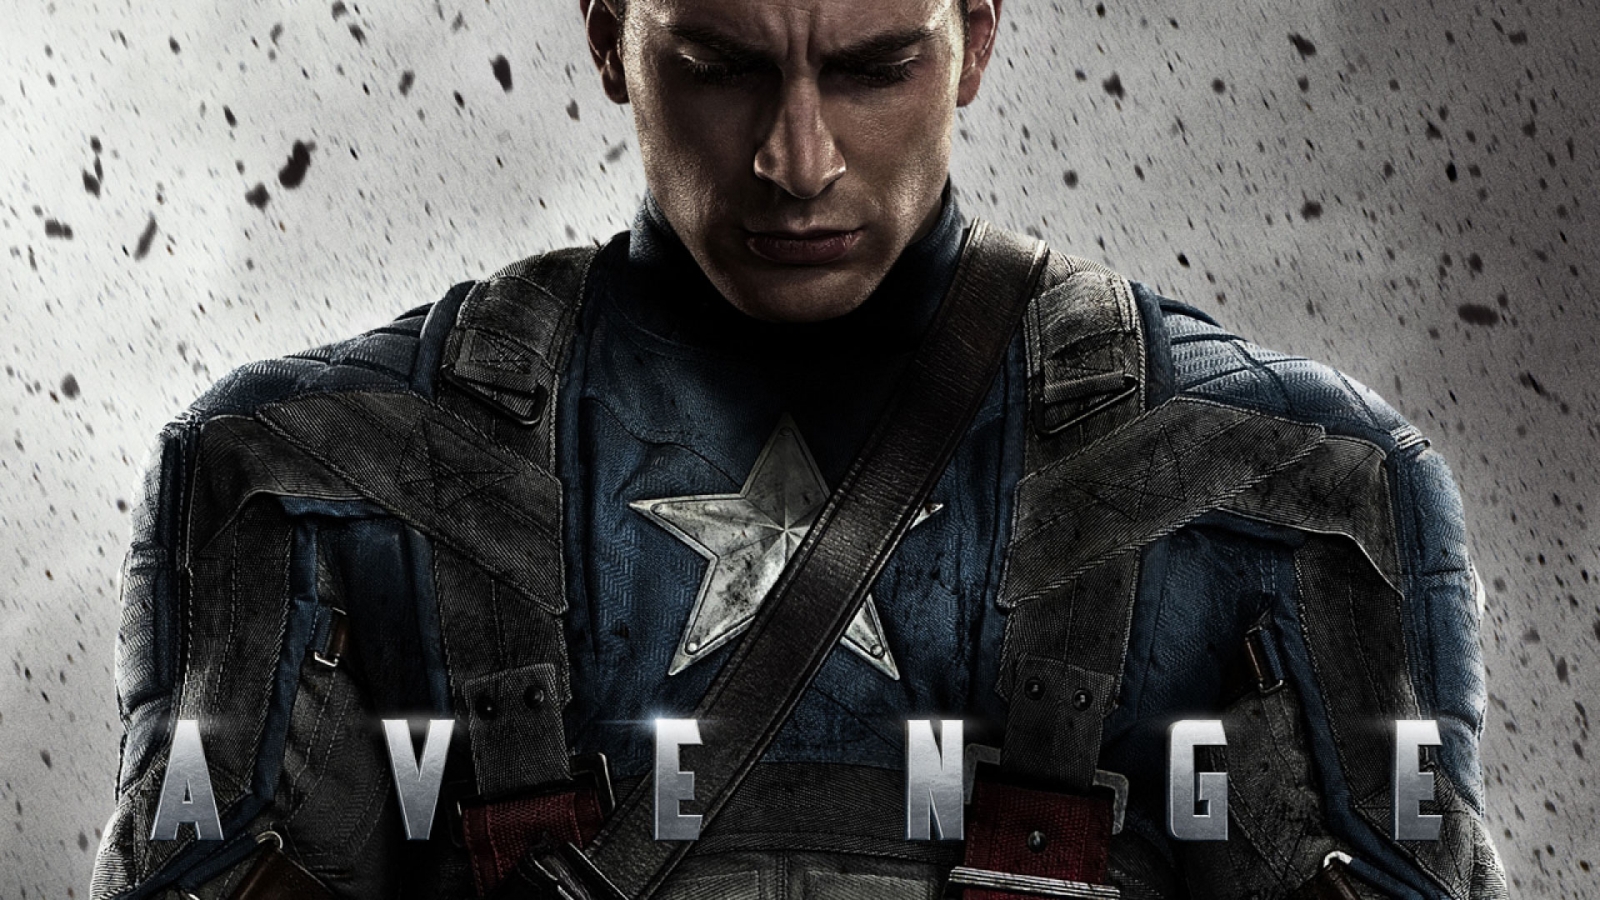 Avenger Captain America for 1600 x 900 HDTV resolution